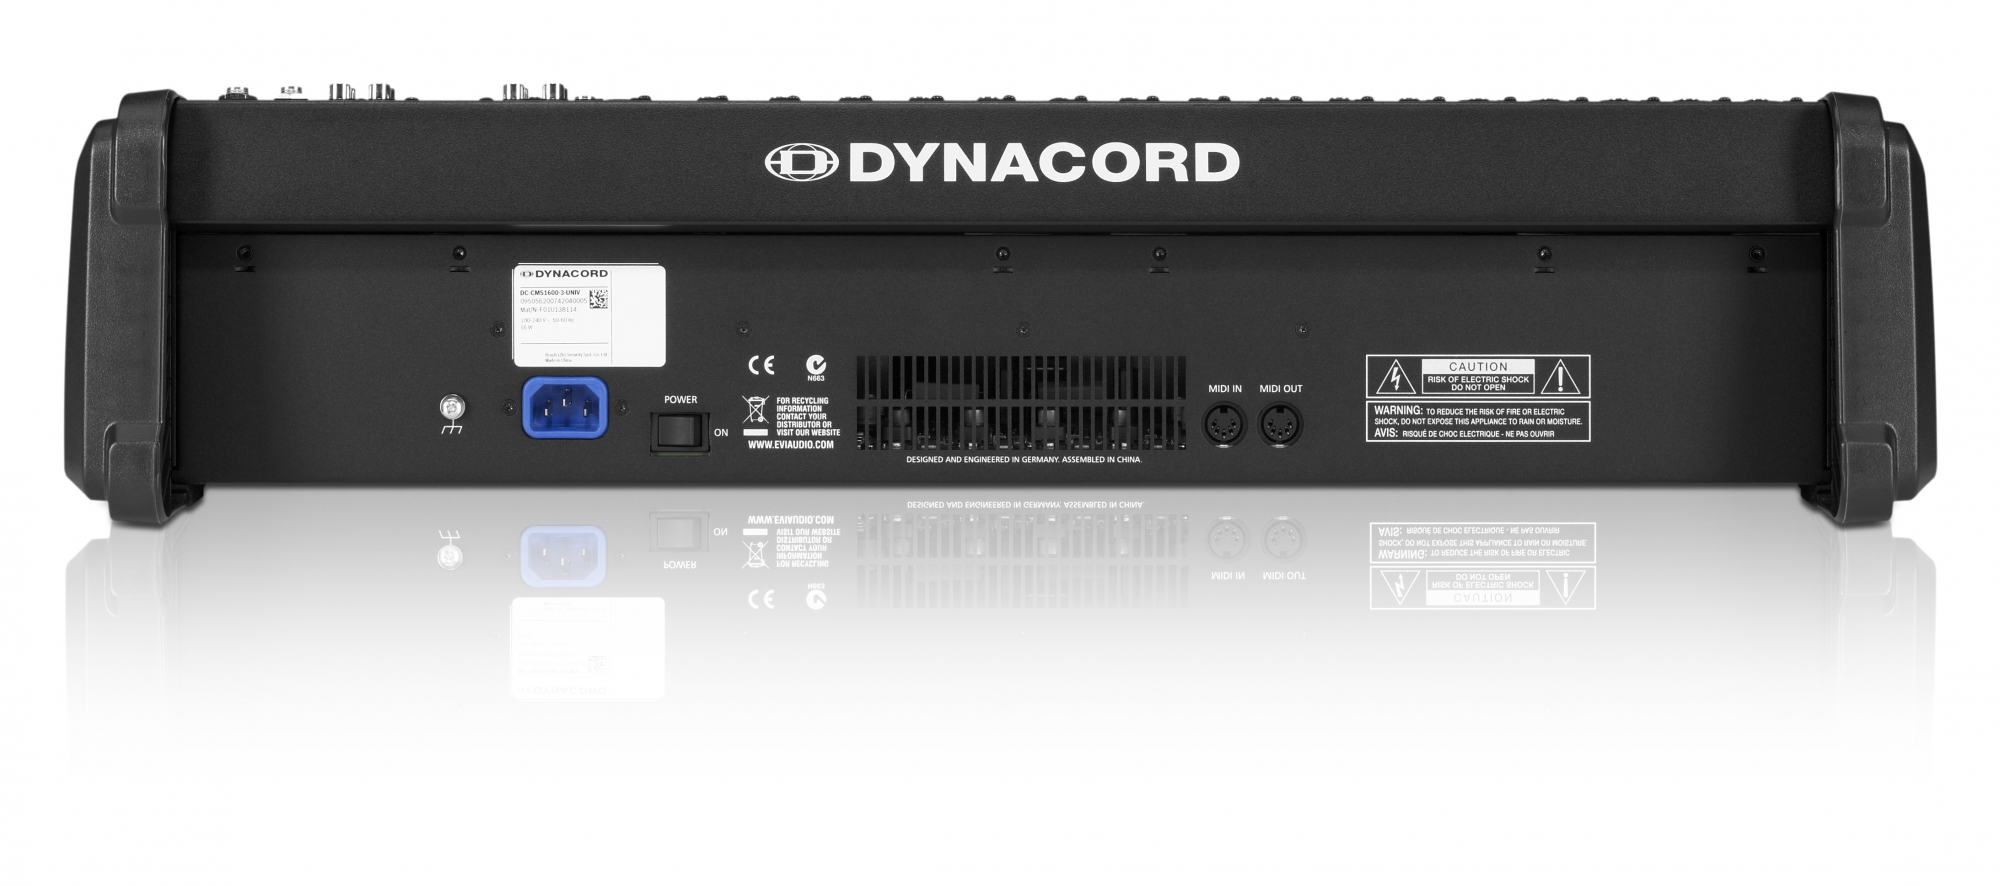 Køb Dynacord CMS 1600-3 til laveste netpris - Se TILBUD i dansk netbutik